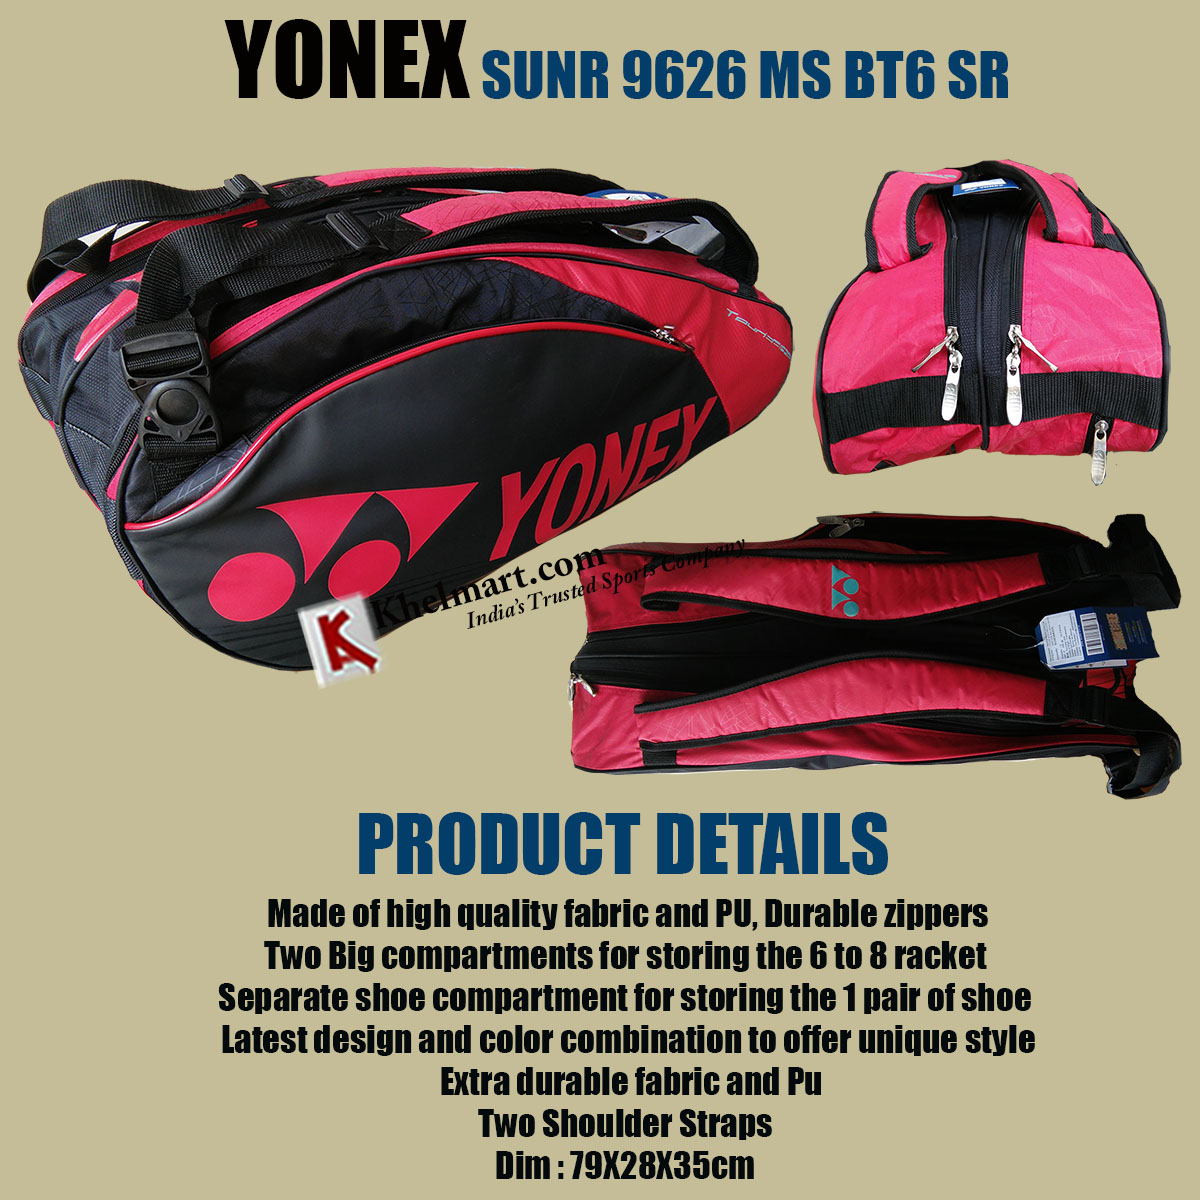 Discover more than 79 one o one kit bag super hot - xkldase.edu.vn